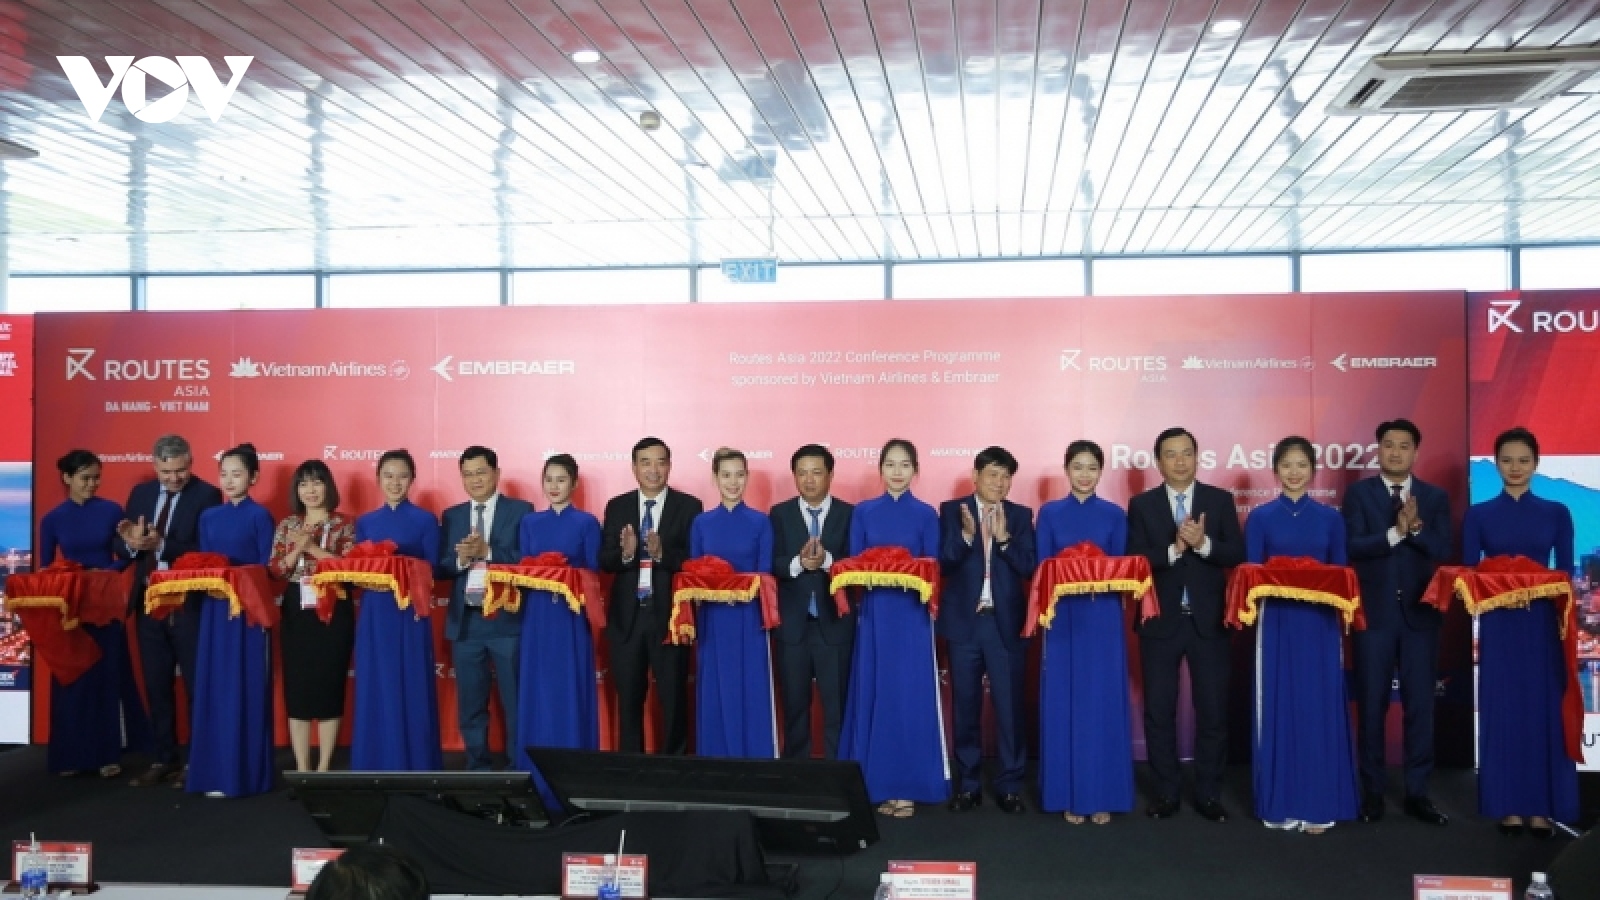 Diễn đàn Phát triển đường bay châu Á lần đầu được tổ chức tại Đà Nẵng